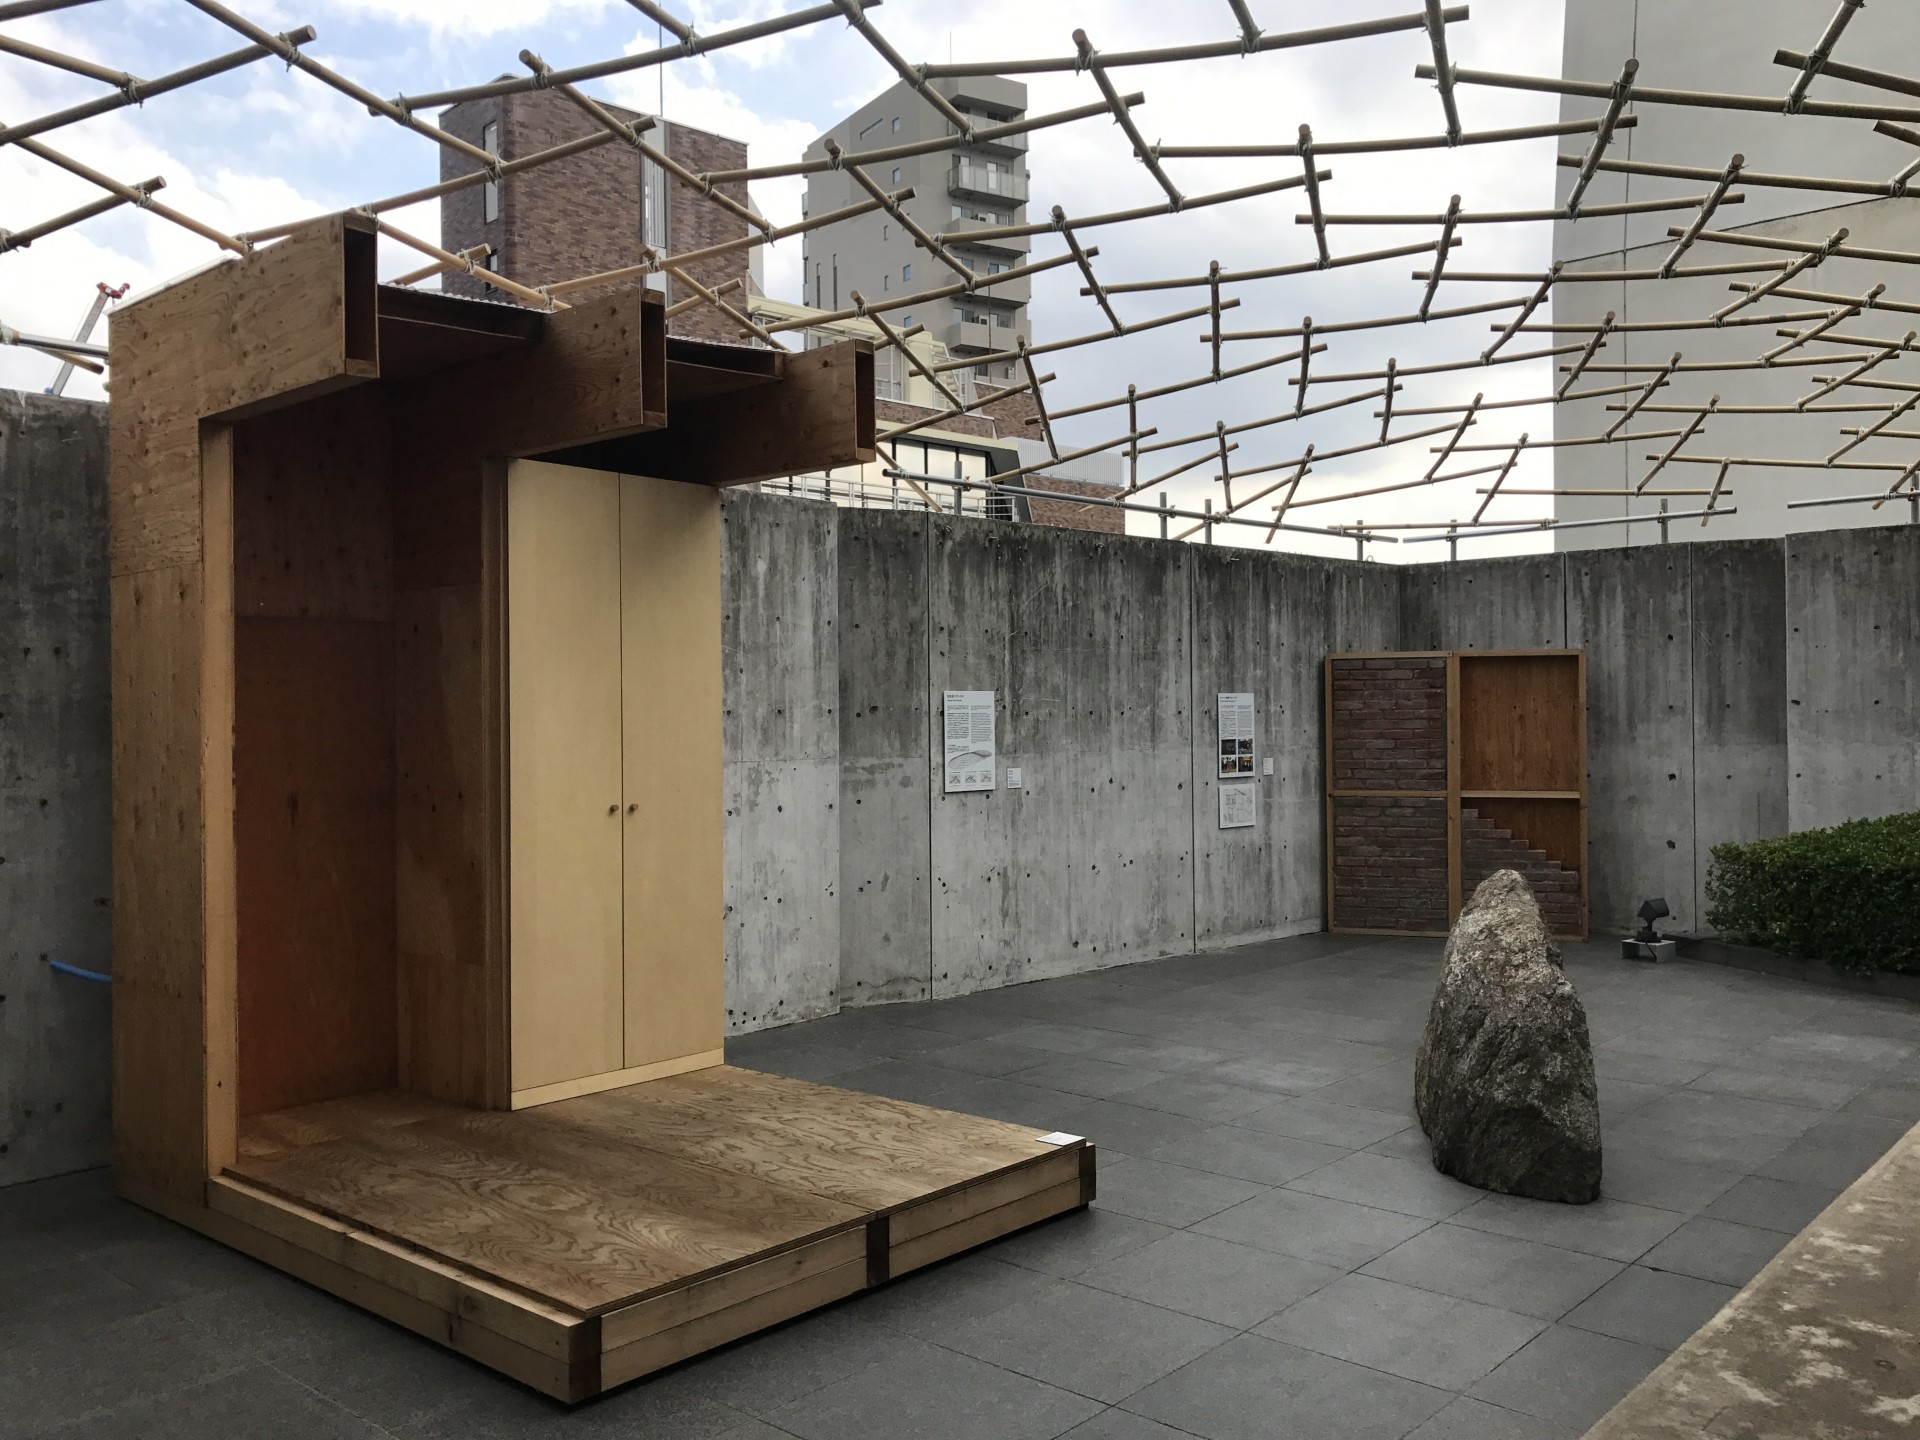 Totoギャラリー 間で国内外で活躍する建築家 坂茂の進行中のプロジェクトを追う展覧会が開催中 Casa